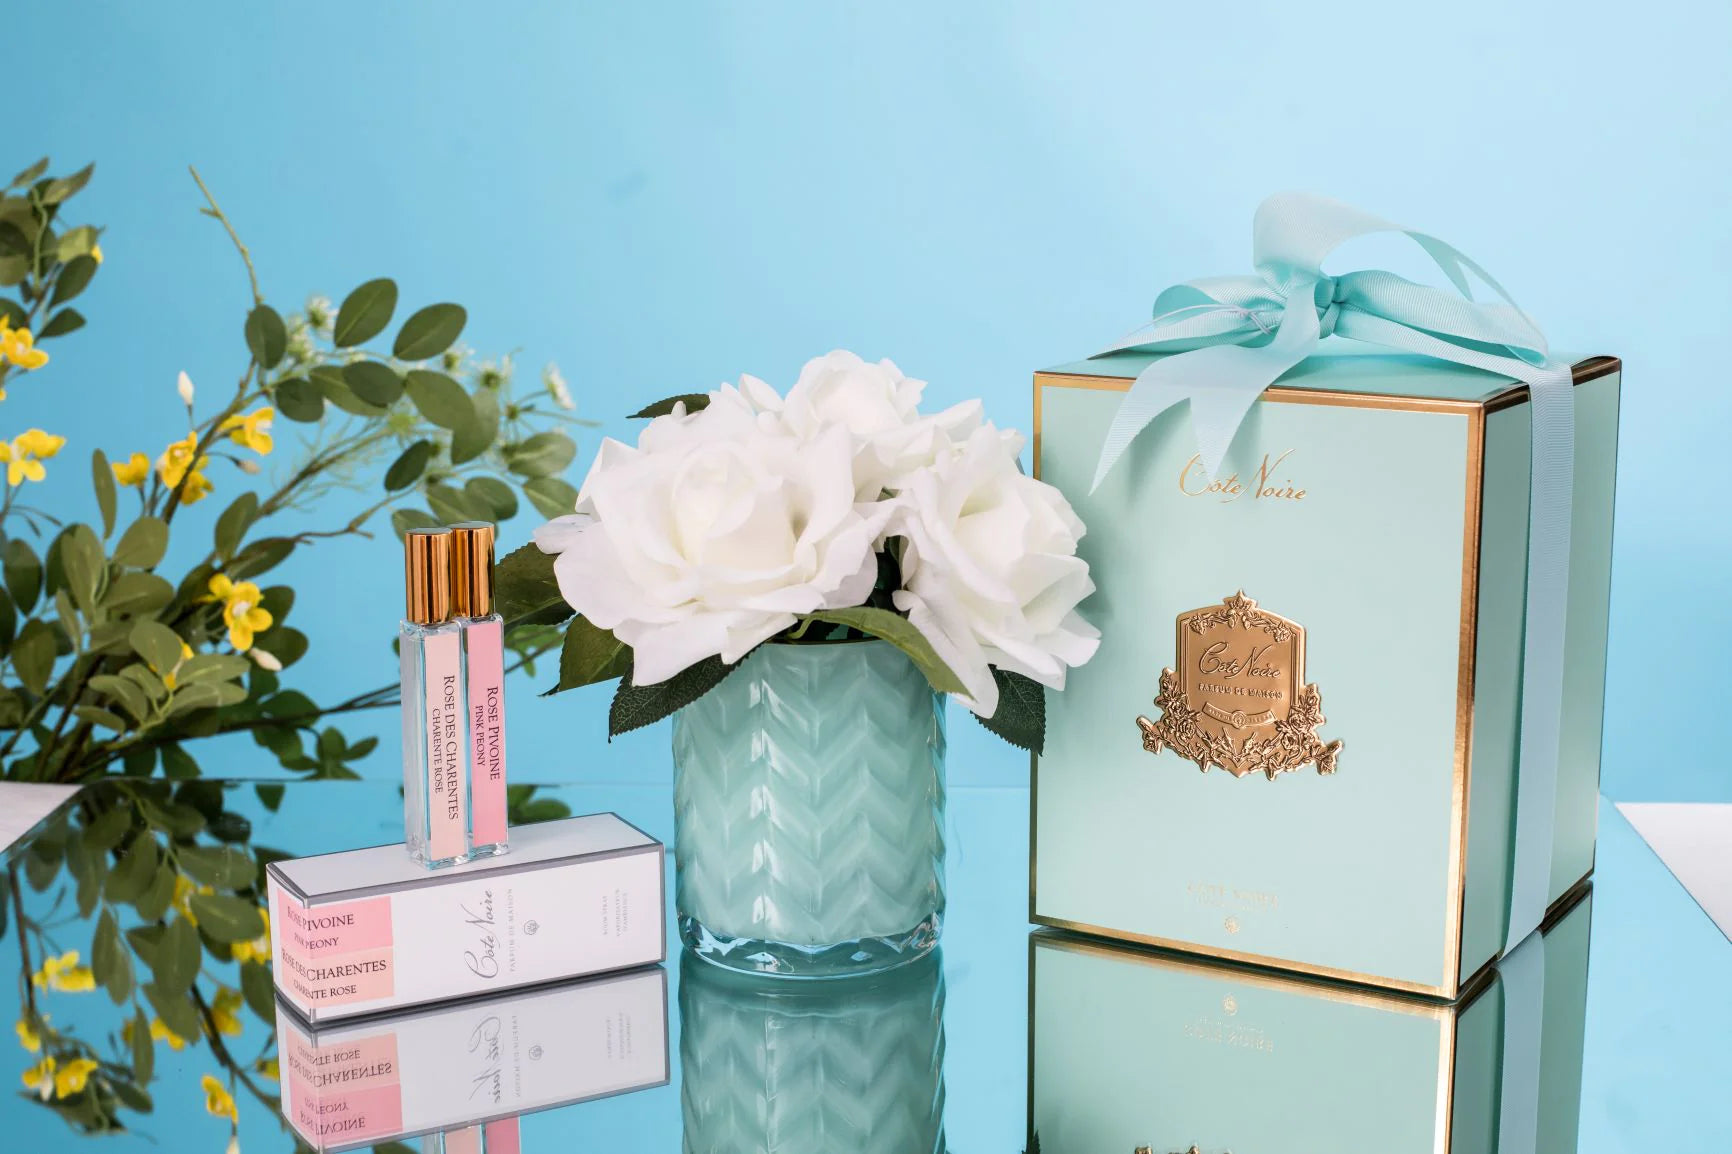 set aus zwei parfumsprays, weisser herringbone duftblume mit blauer vase und blauer geschenkbox mit schleife.